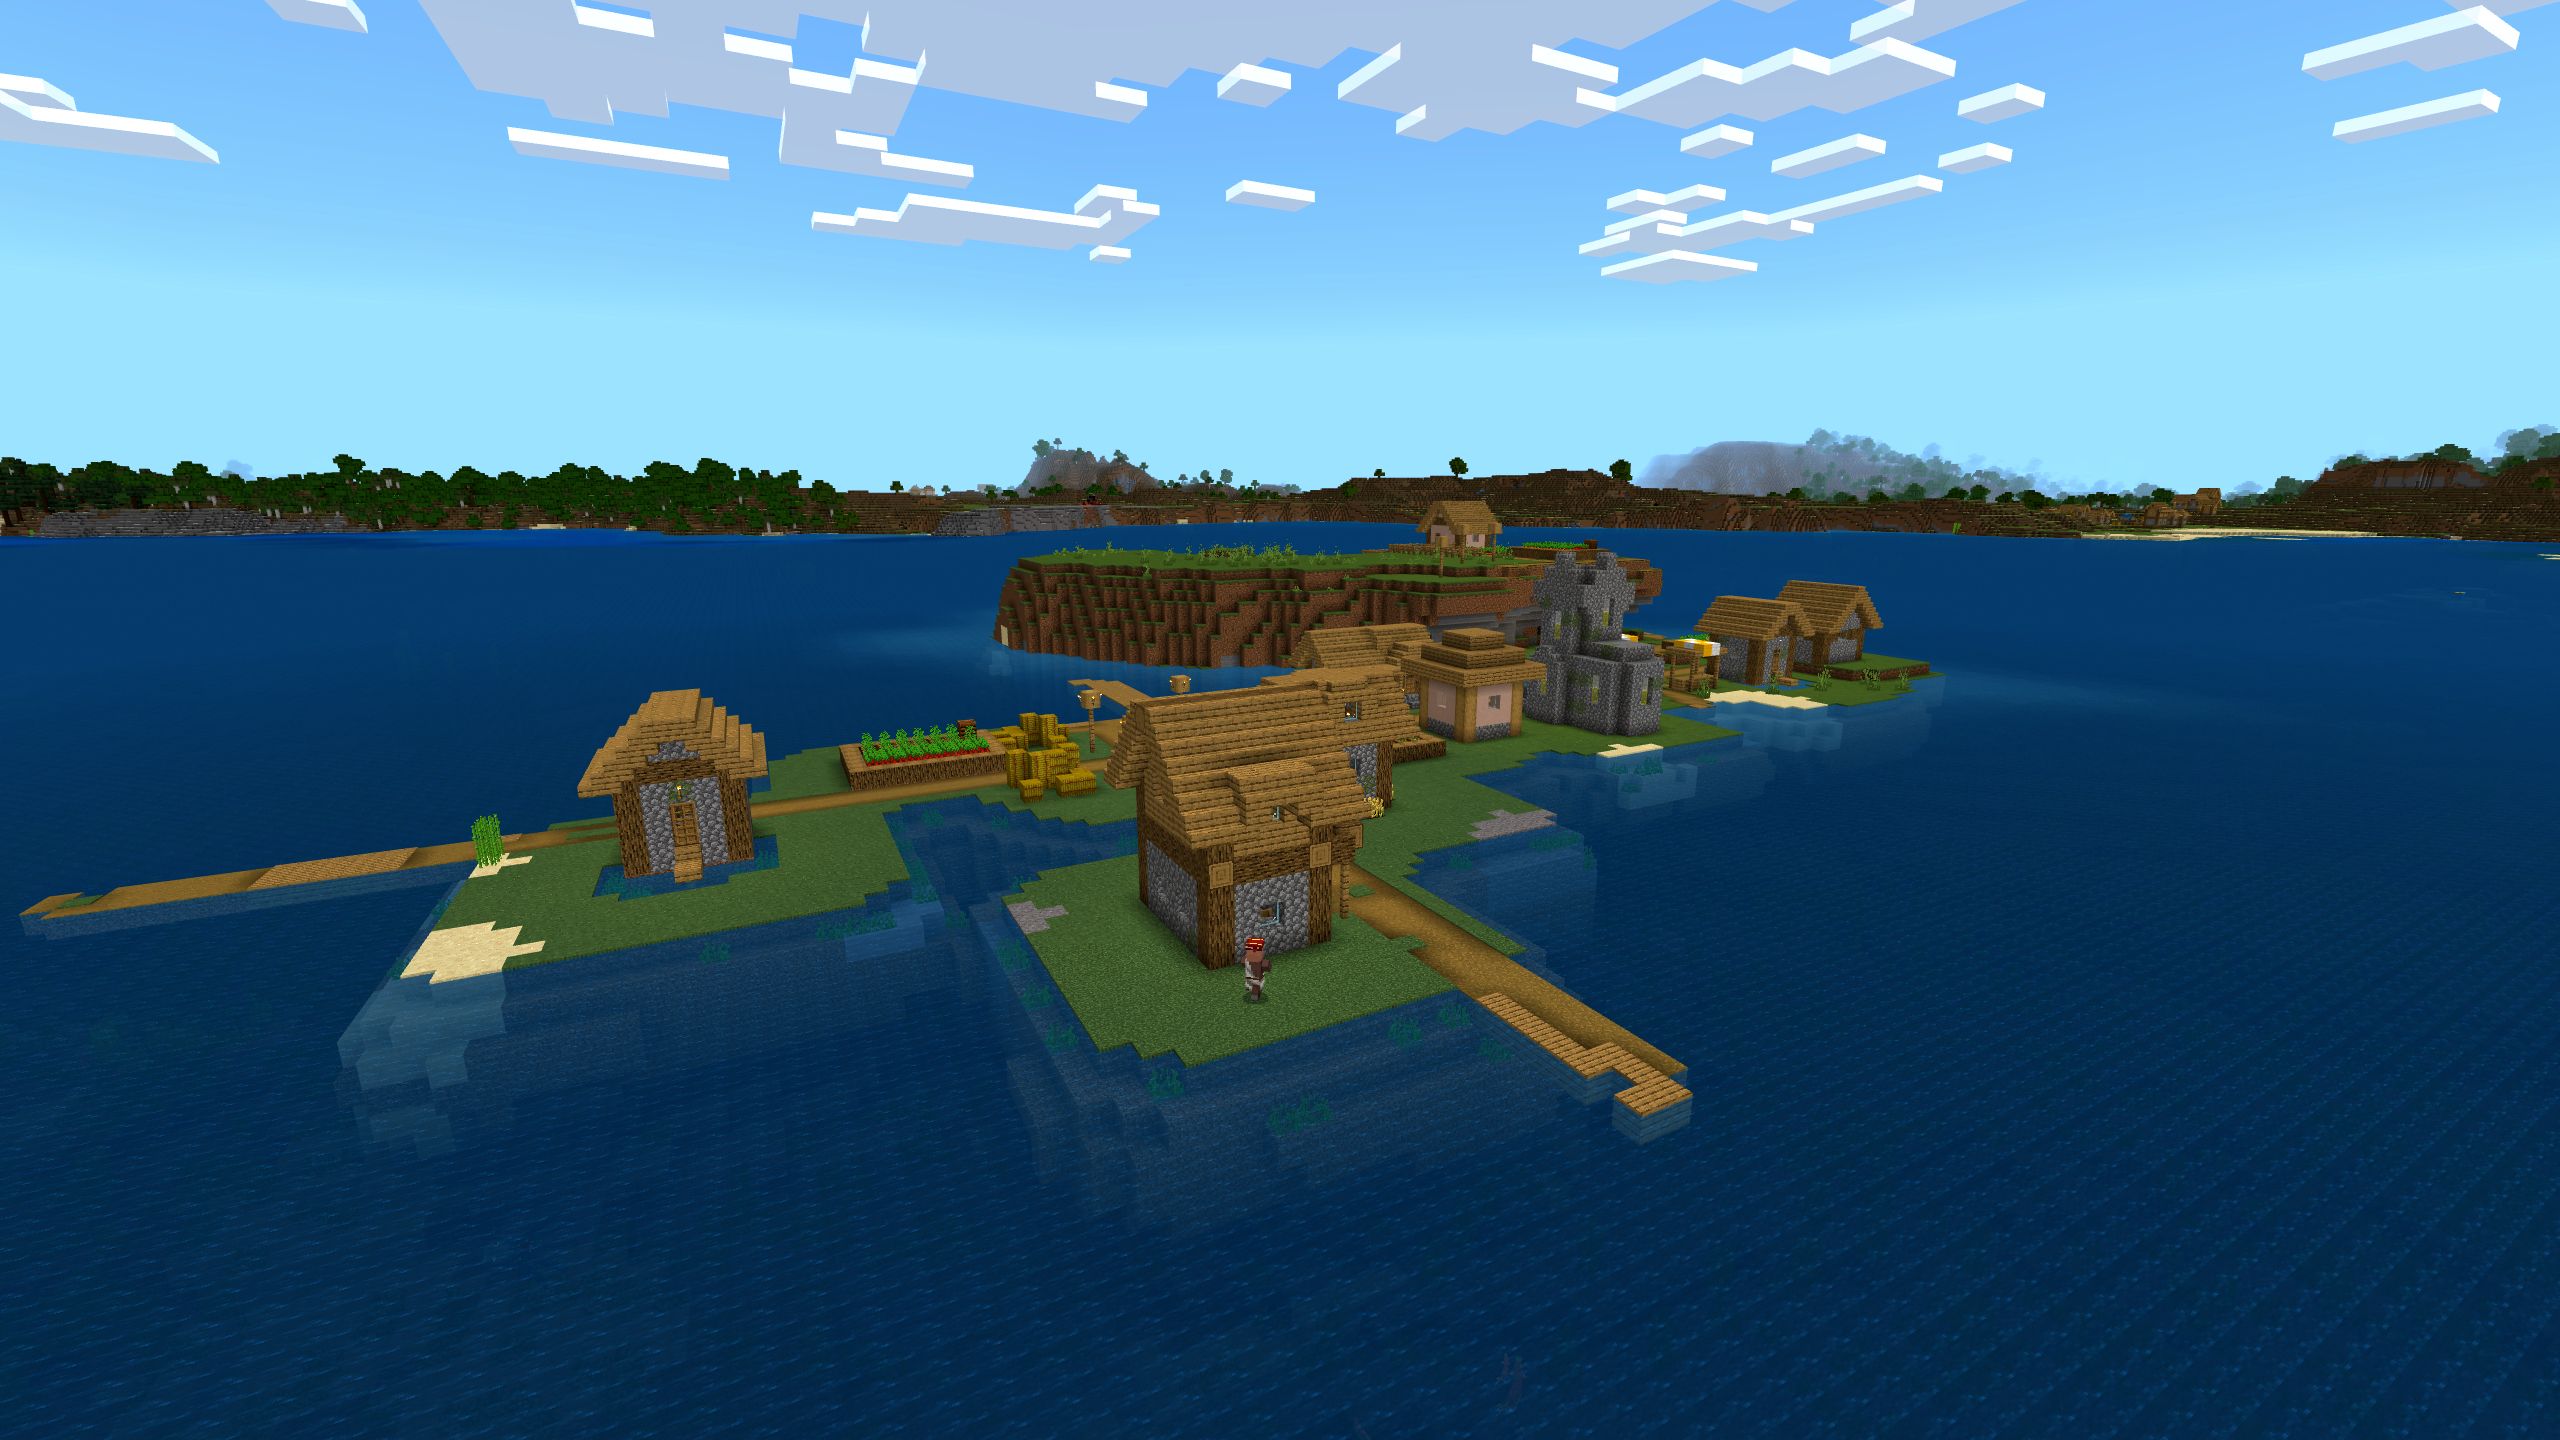 Minecraft Bedrock Edition Small Village On Lagoon Island